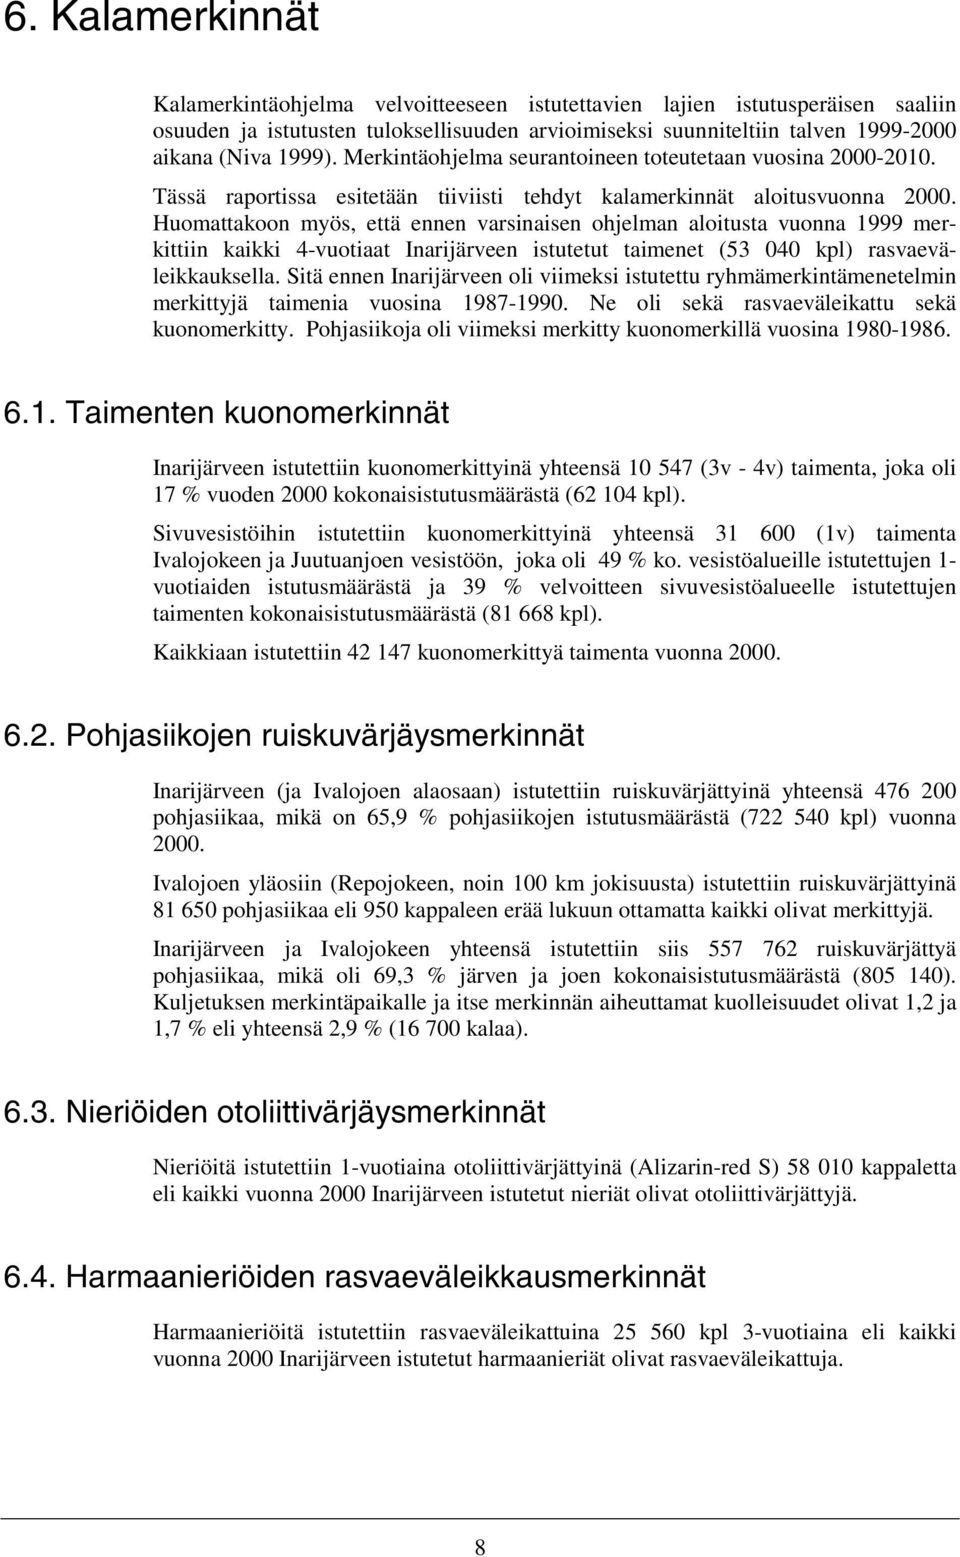 Huomattakoon myös, että ennen varsinaisen ohjelman aloitusta vuonna 1999 merkittiin kaikki 4-vuotiaat Inarijärveen istutetut taimenet (53 4 kpl) rasvaeväleikkauksella.